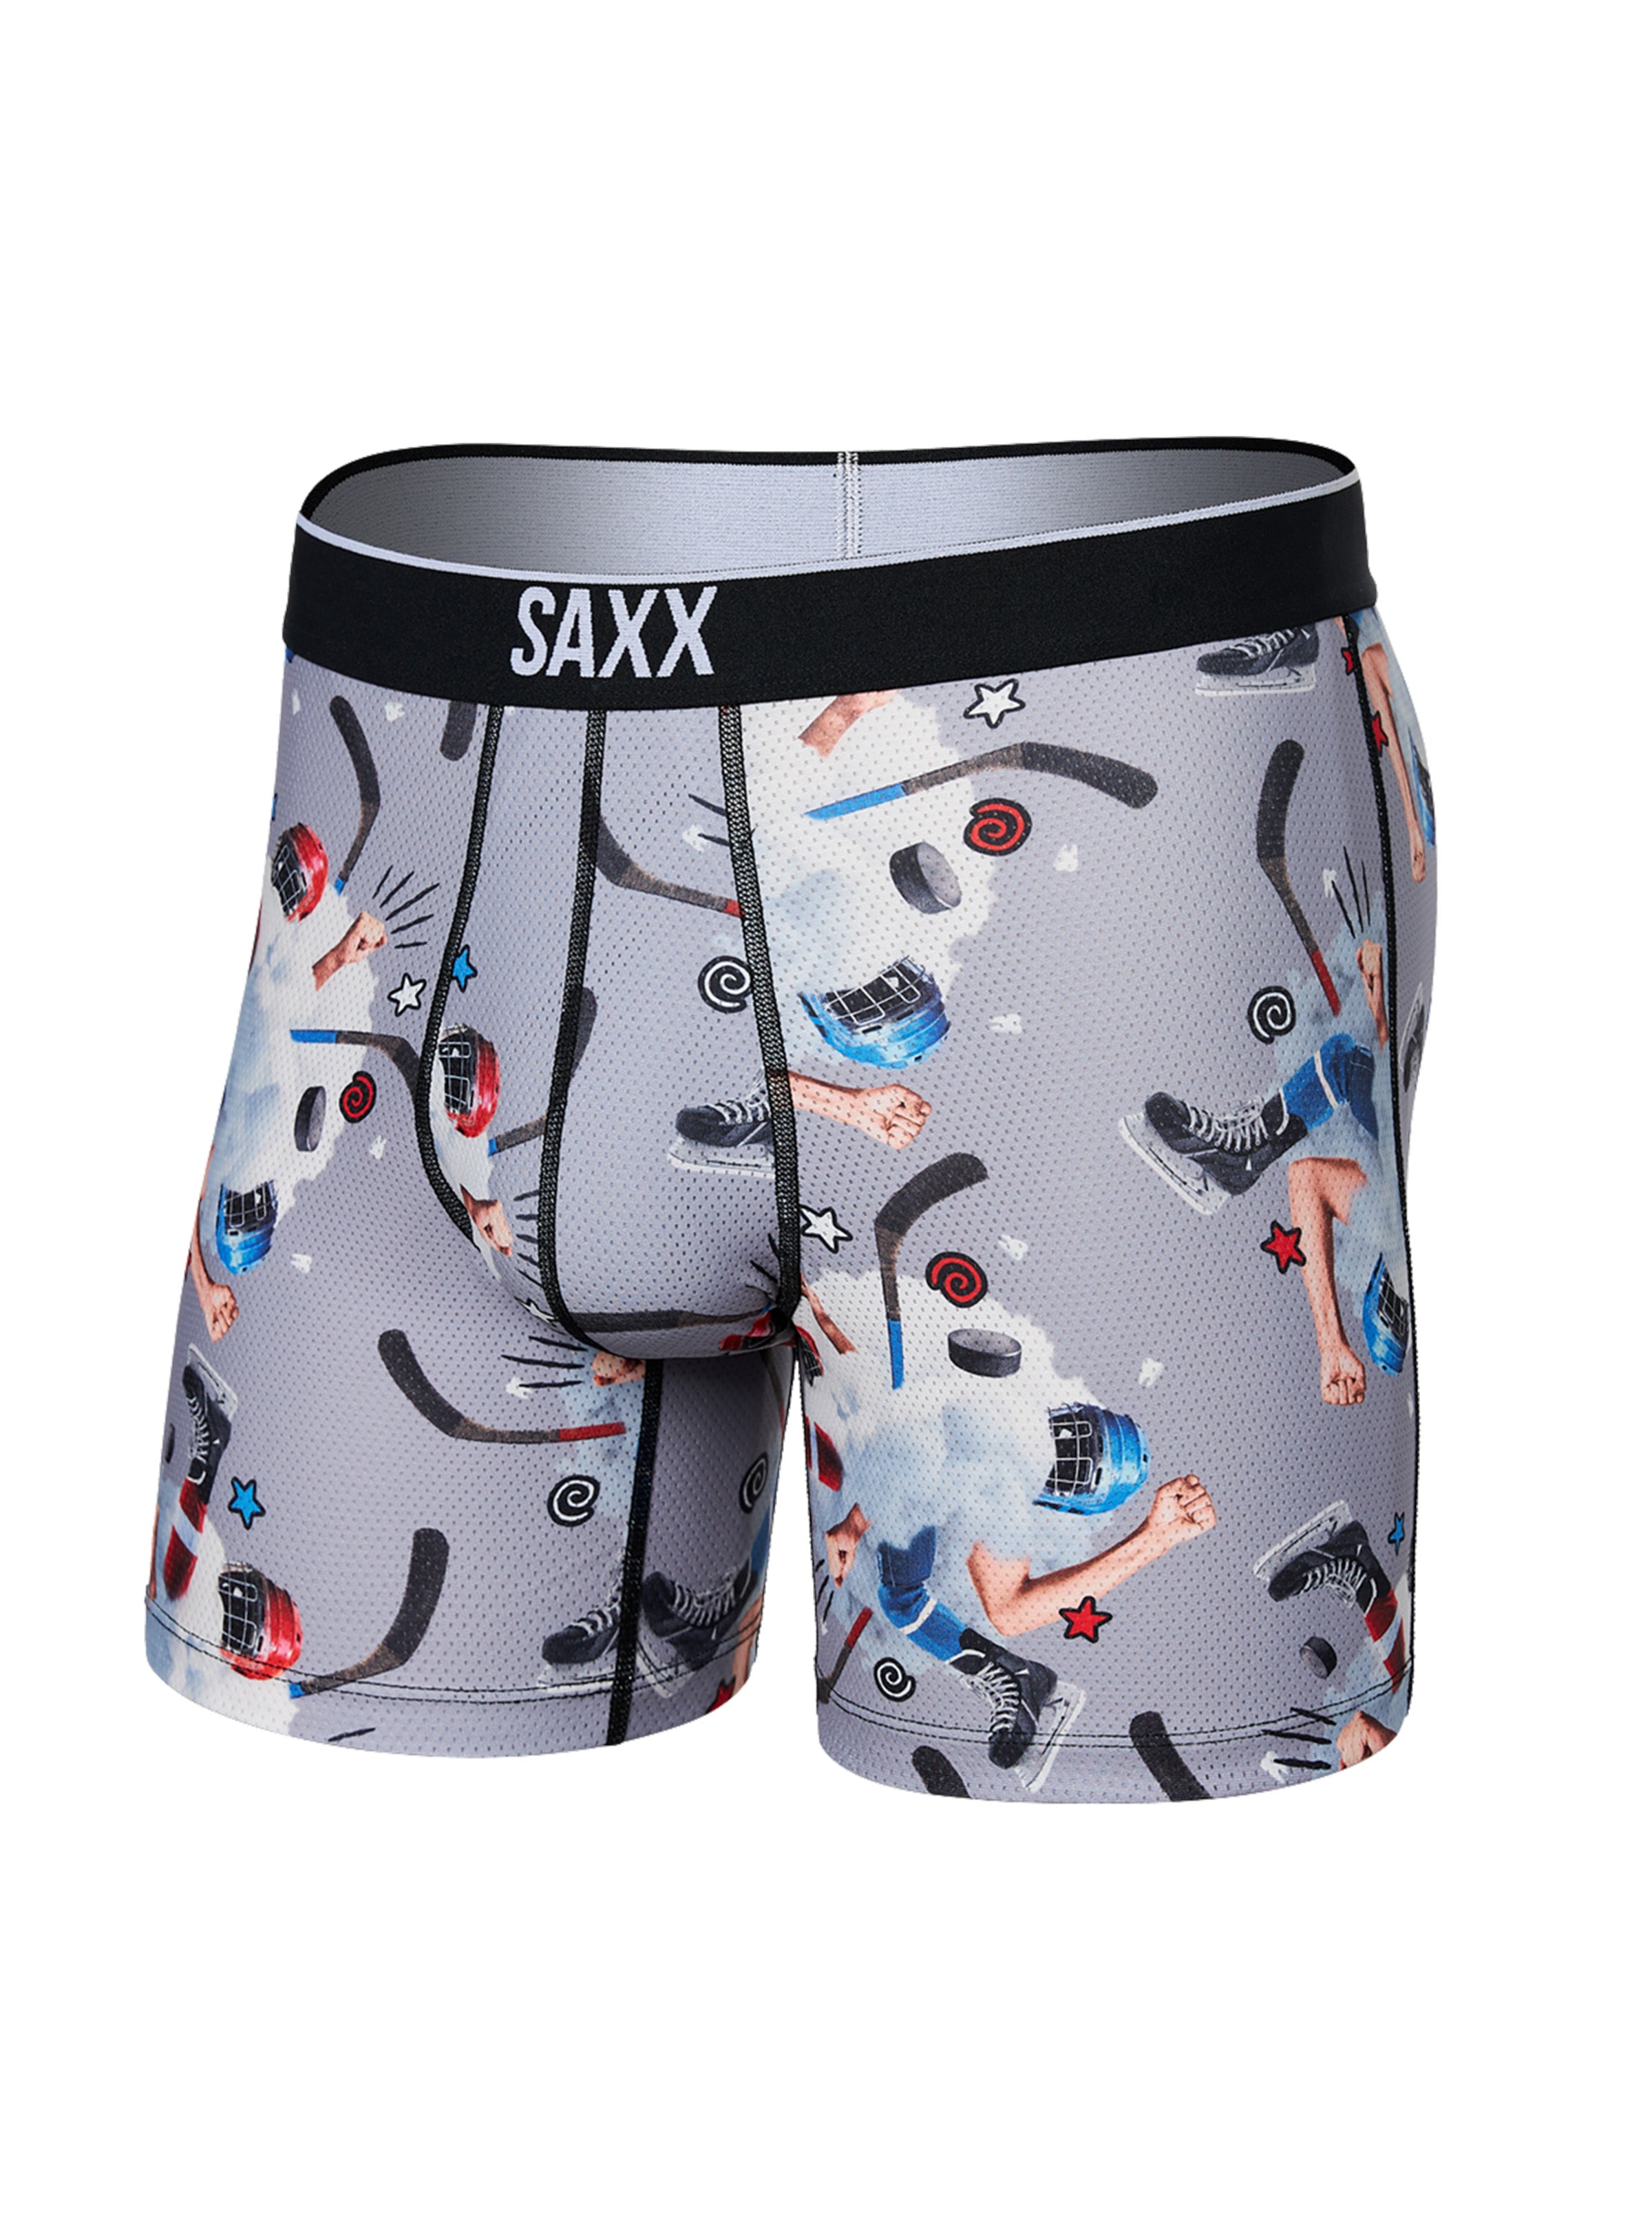 Josie's of Wiarton - Today's arrival hockey player SAXX Underwear